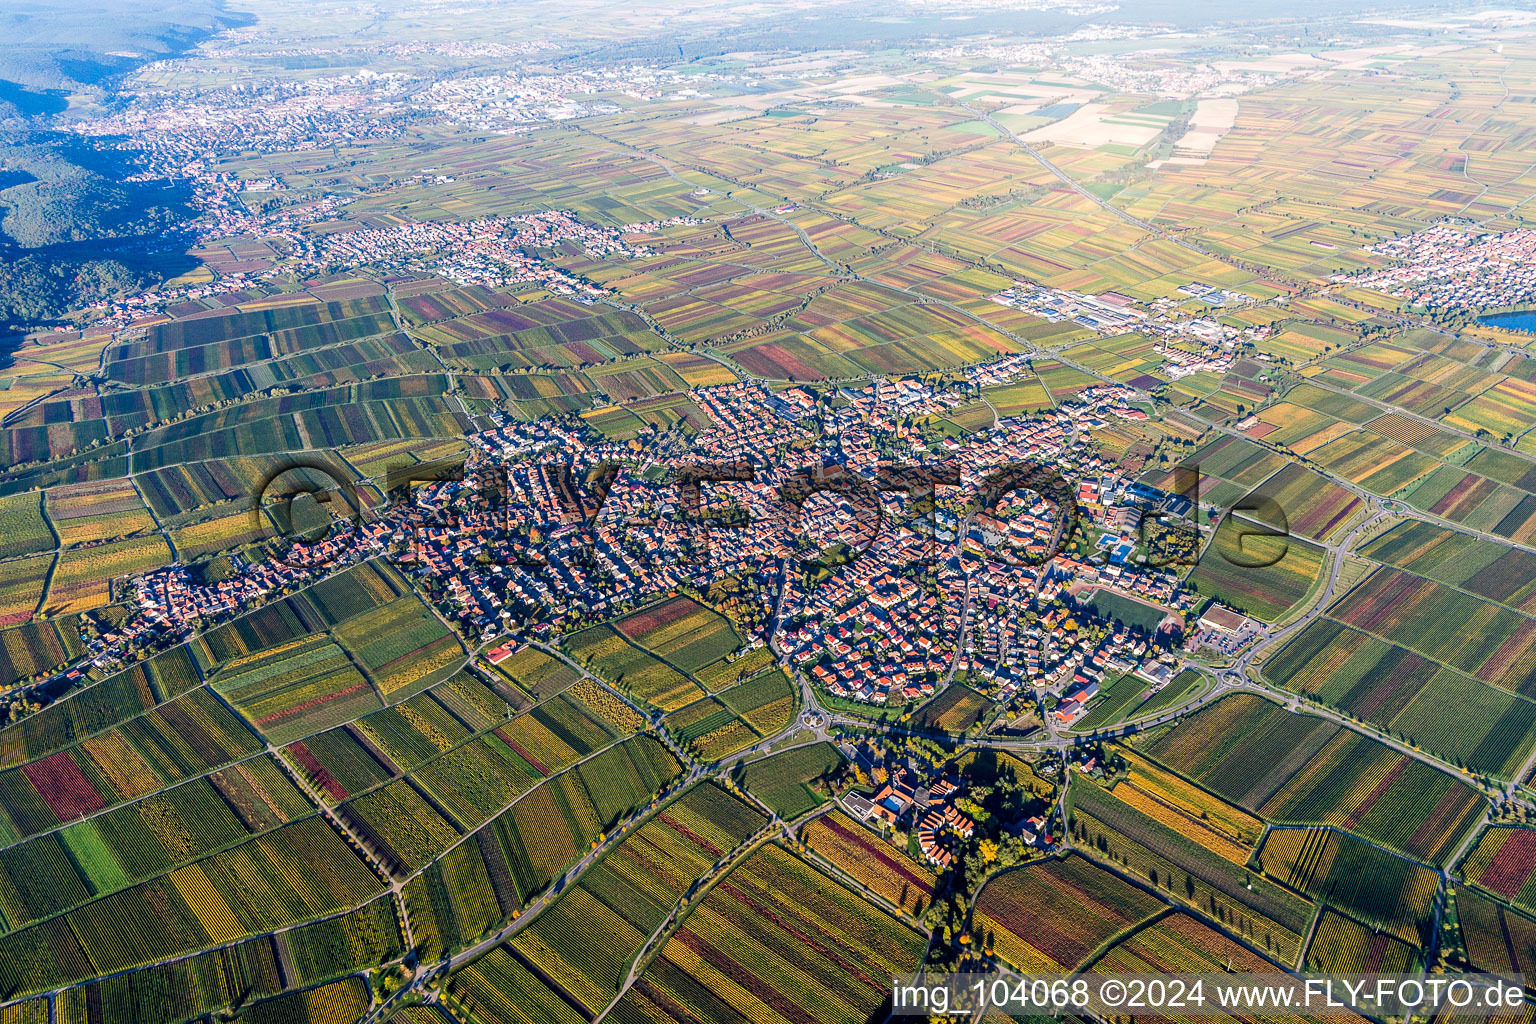 Vue aérienne de Vue des rues et des maisons des quartiers résidentiels à Maikammer dans le département Rhénanie-Palatinat, Allemagne